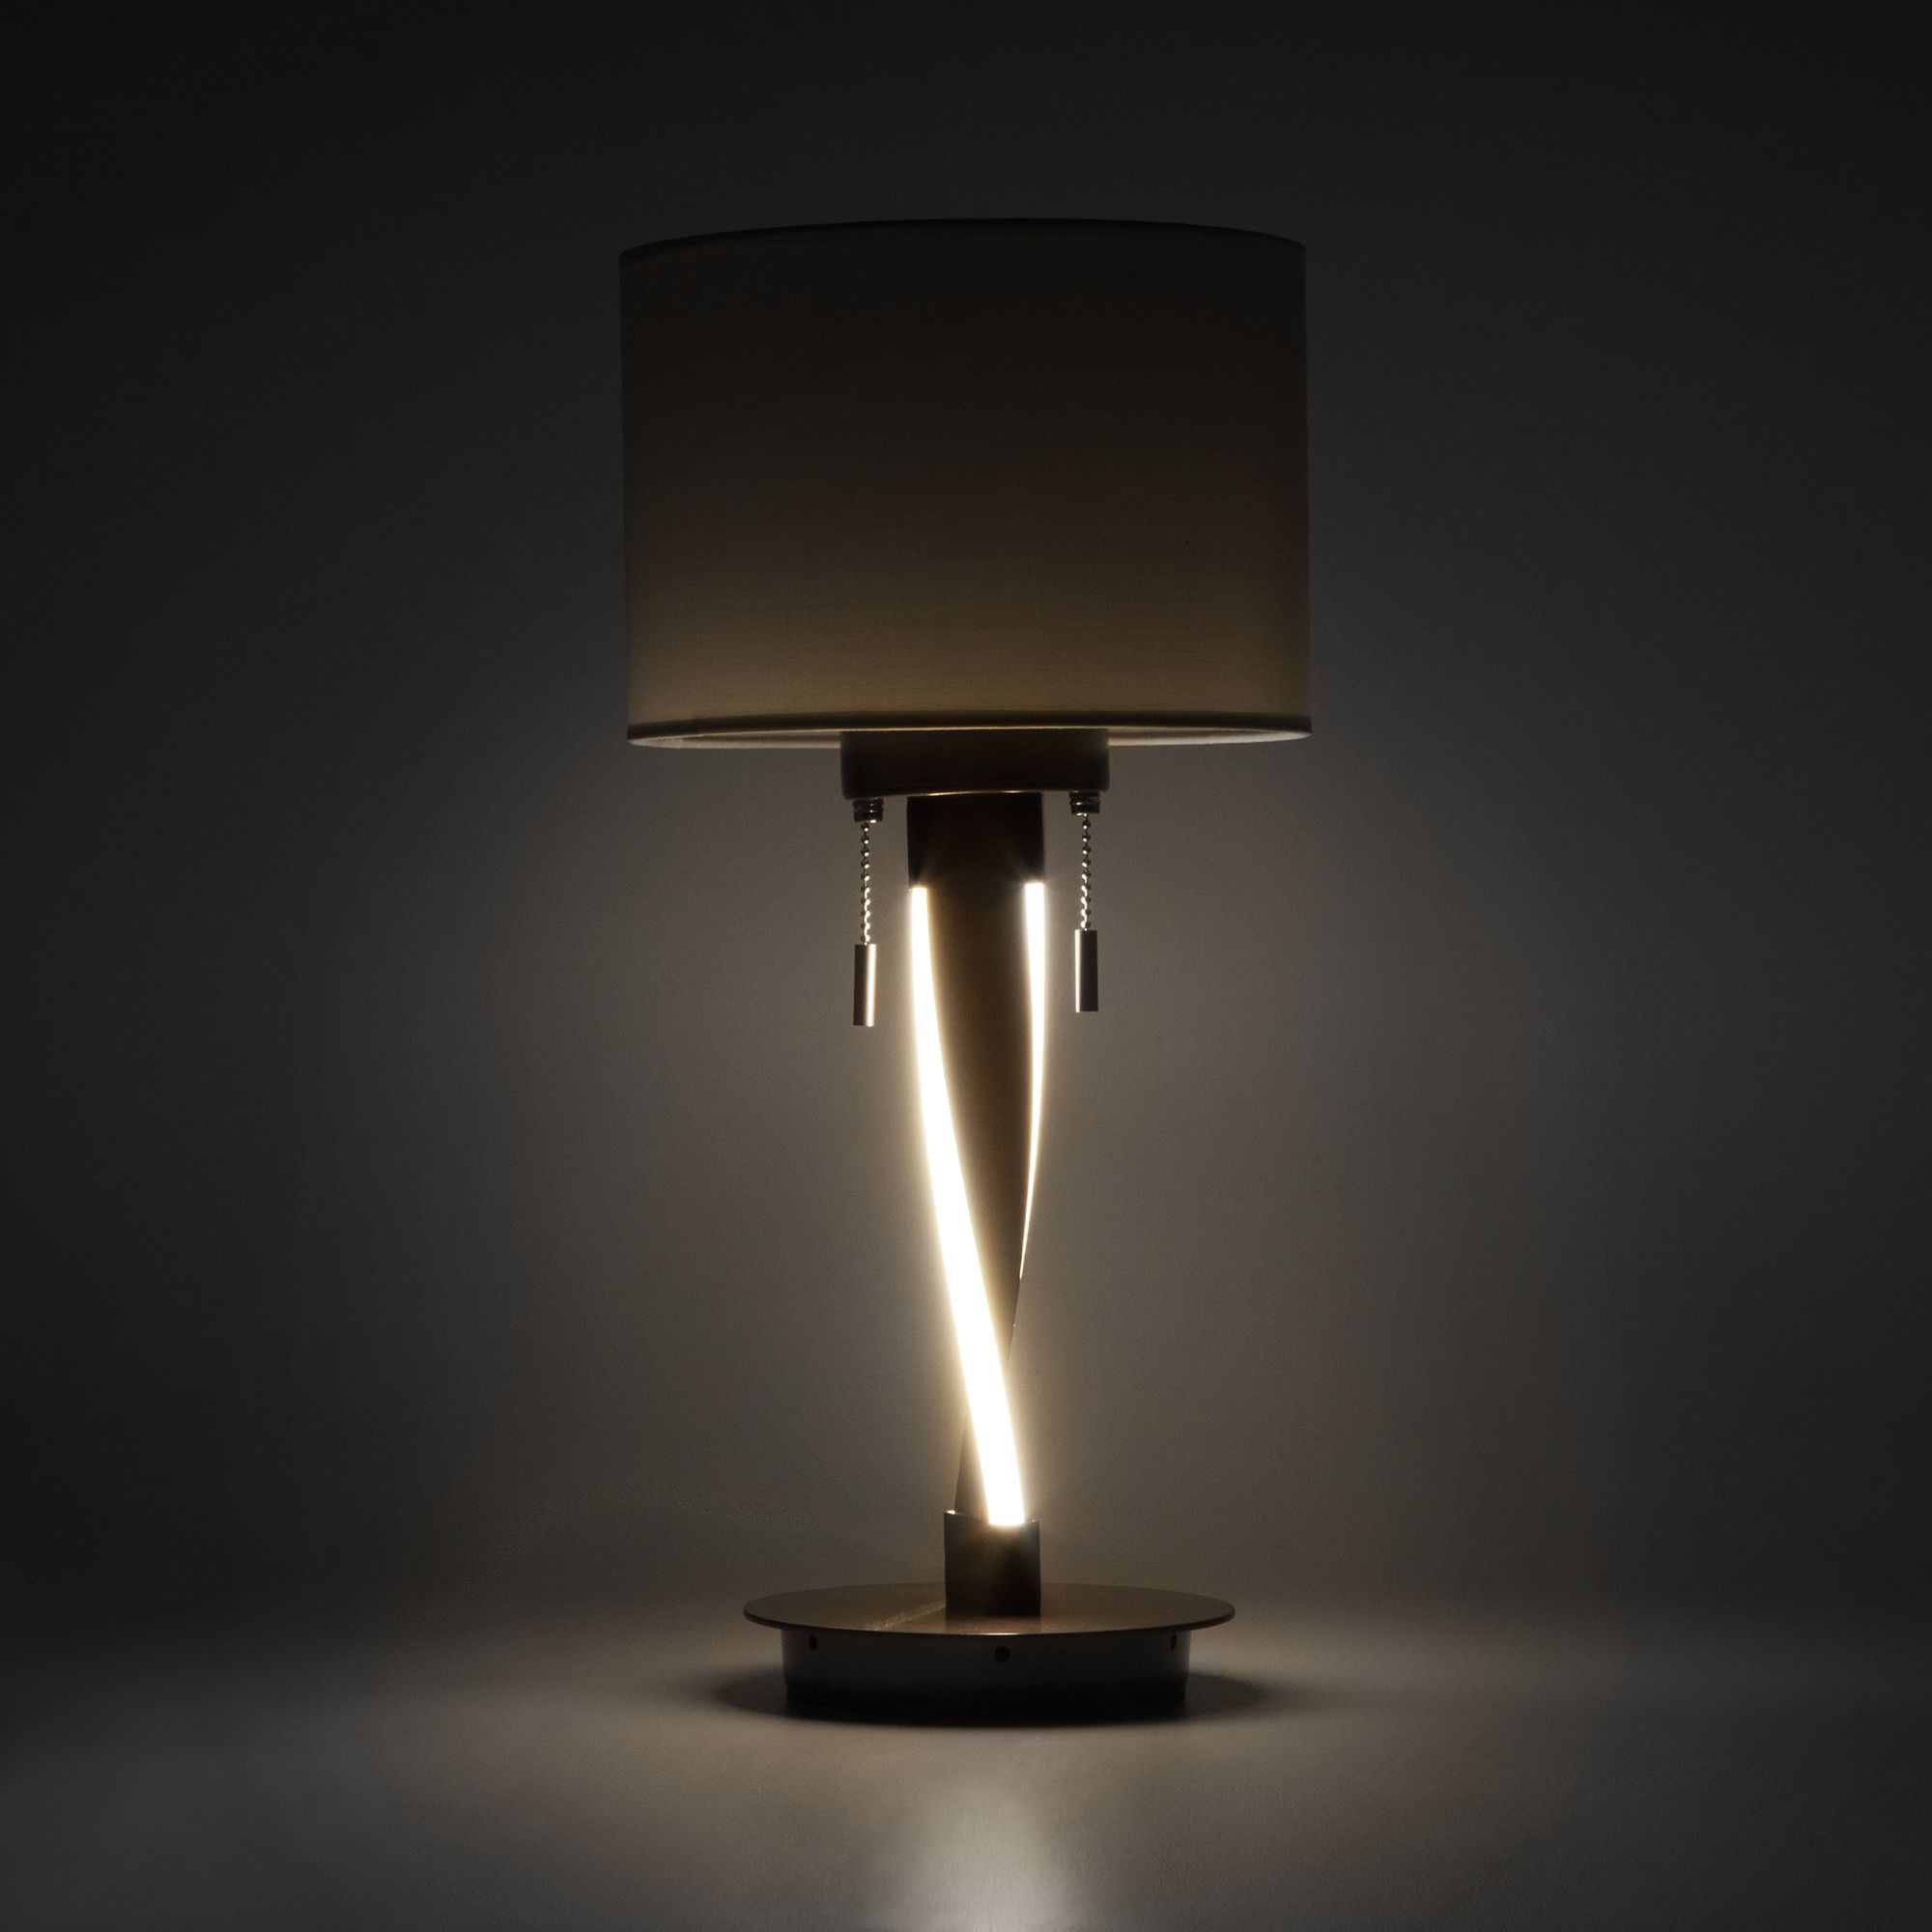 Настольный светодиодный светильник с тканевым абажуром Bogate's Titan 991 белый / коричневый. Фото 2